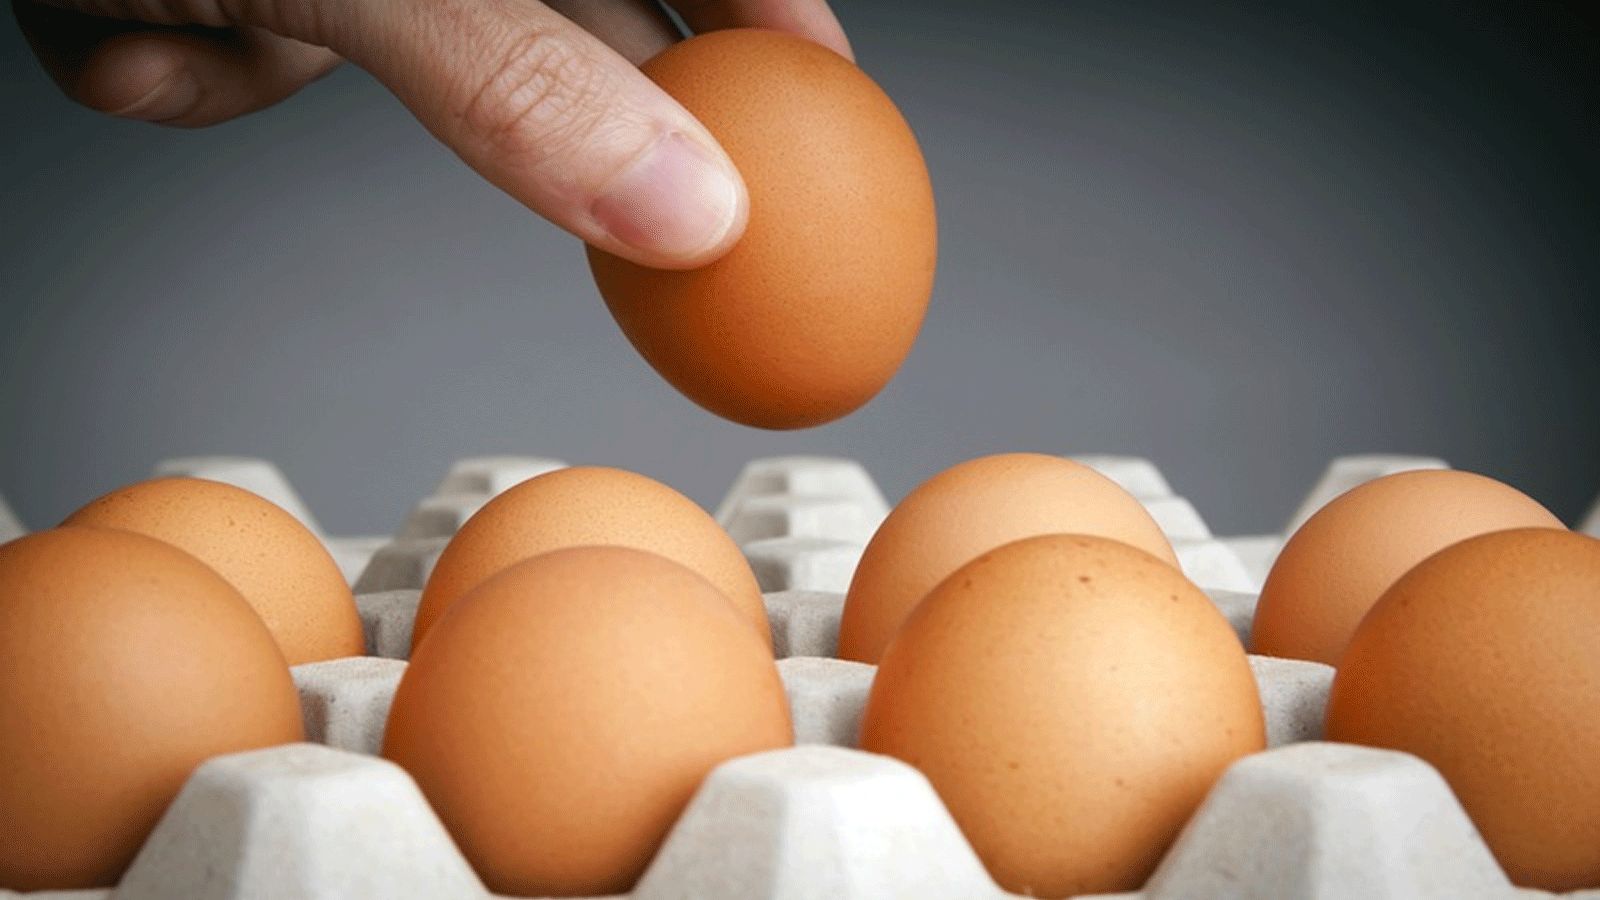 البيض غني بالبروتين ومفيد لوجبة الصباح